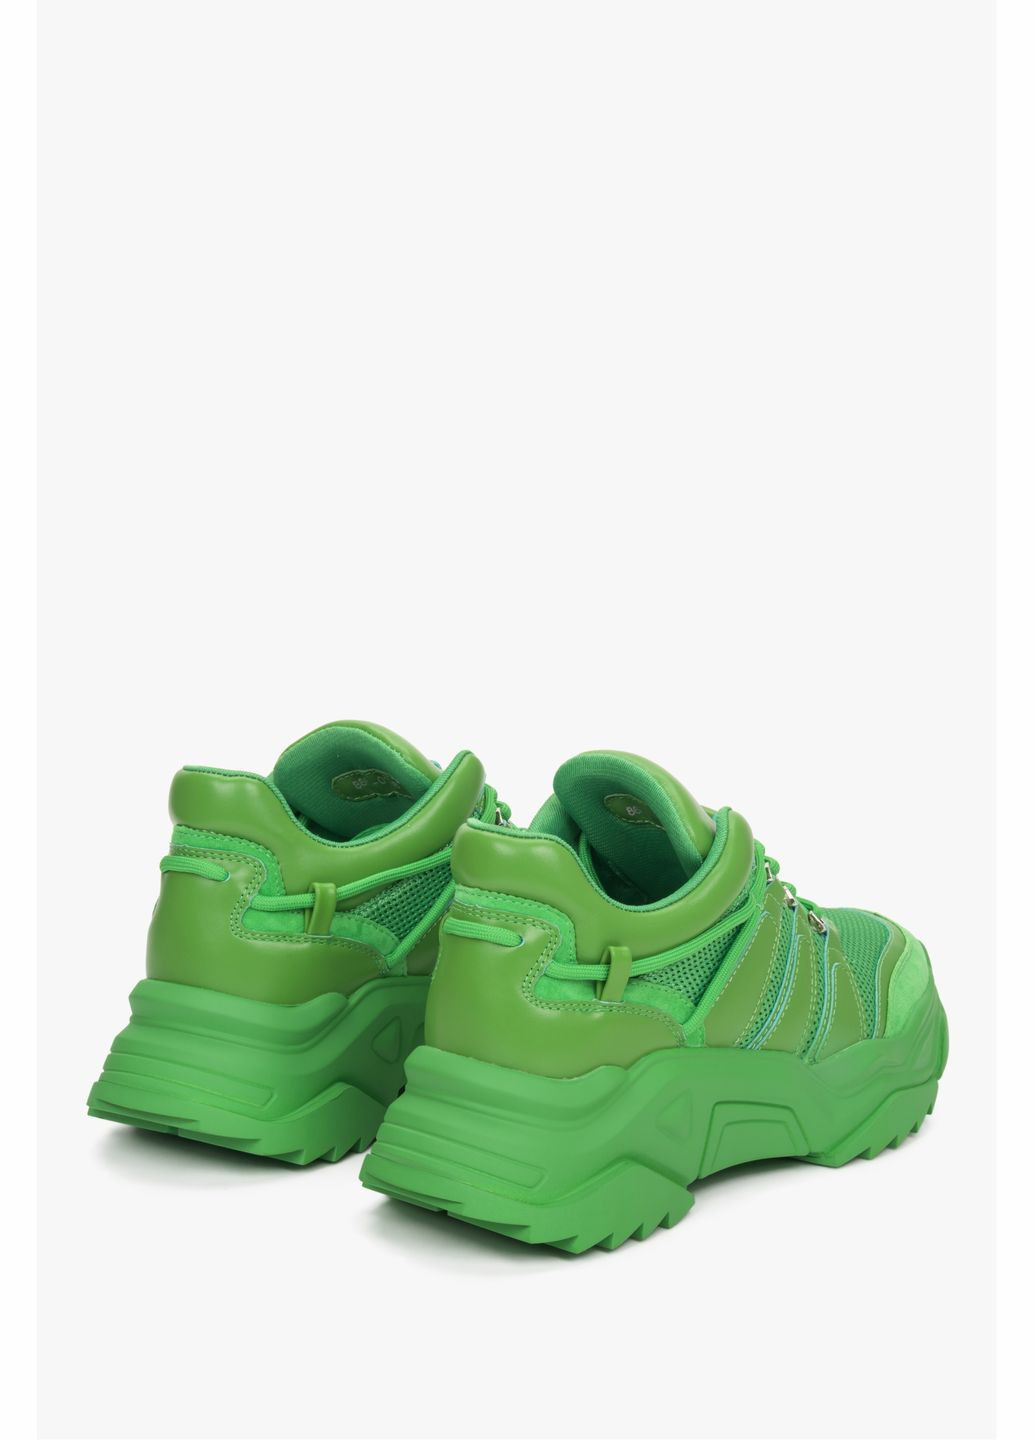 Зеленые демисезонные кроссовки, цвет зеленый ES8